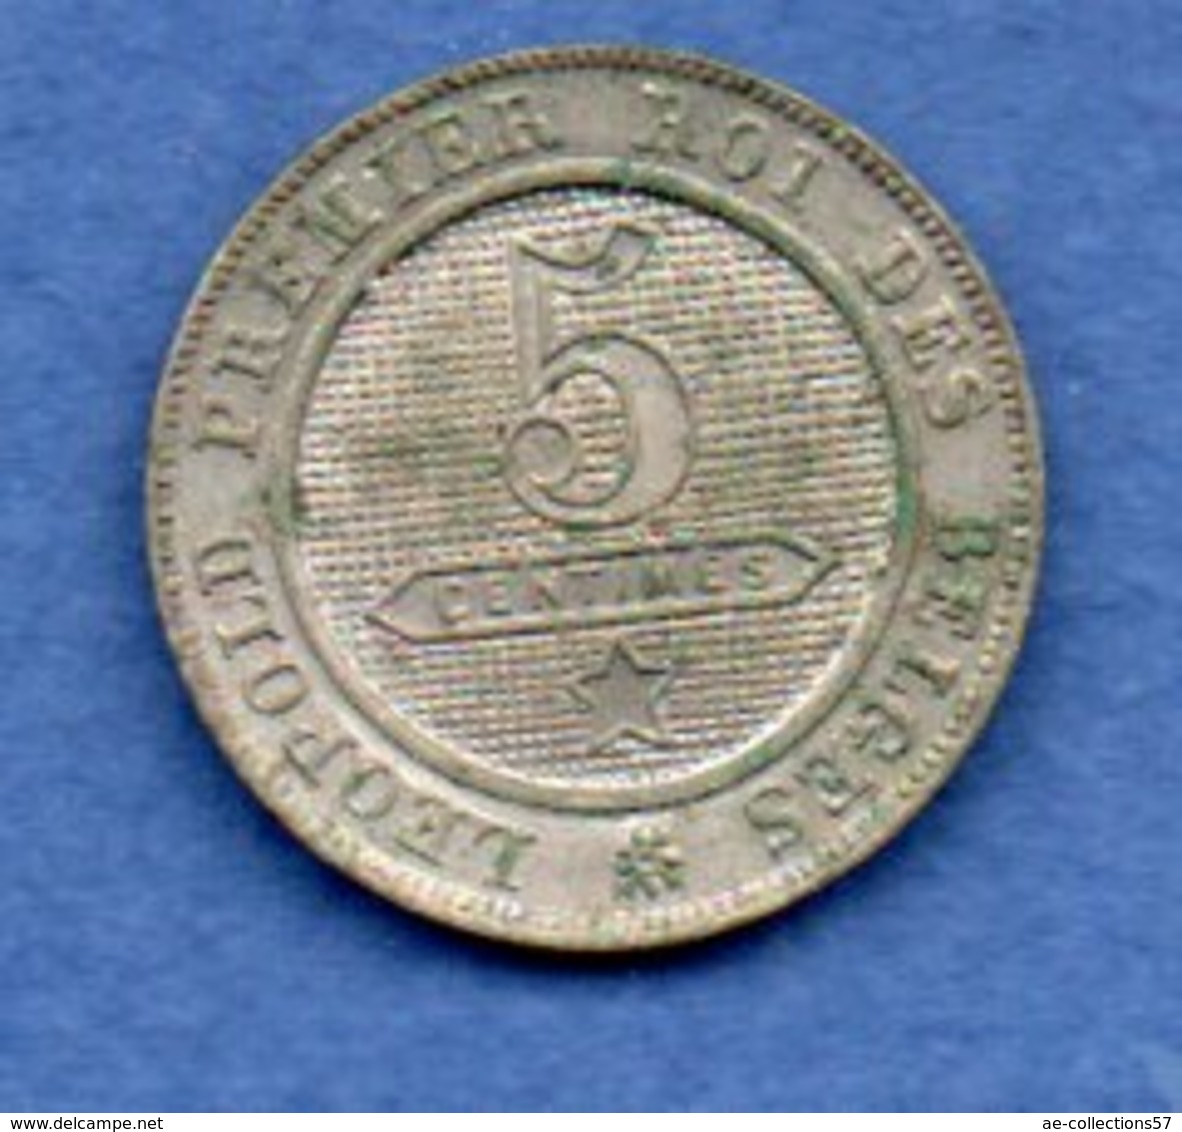 Belgique  -  5 Centimes 1861 -  Km # 21  - état  SUP  -  Rare En L état - 5 Centimes